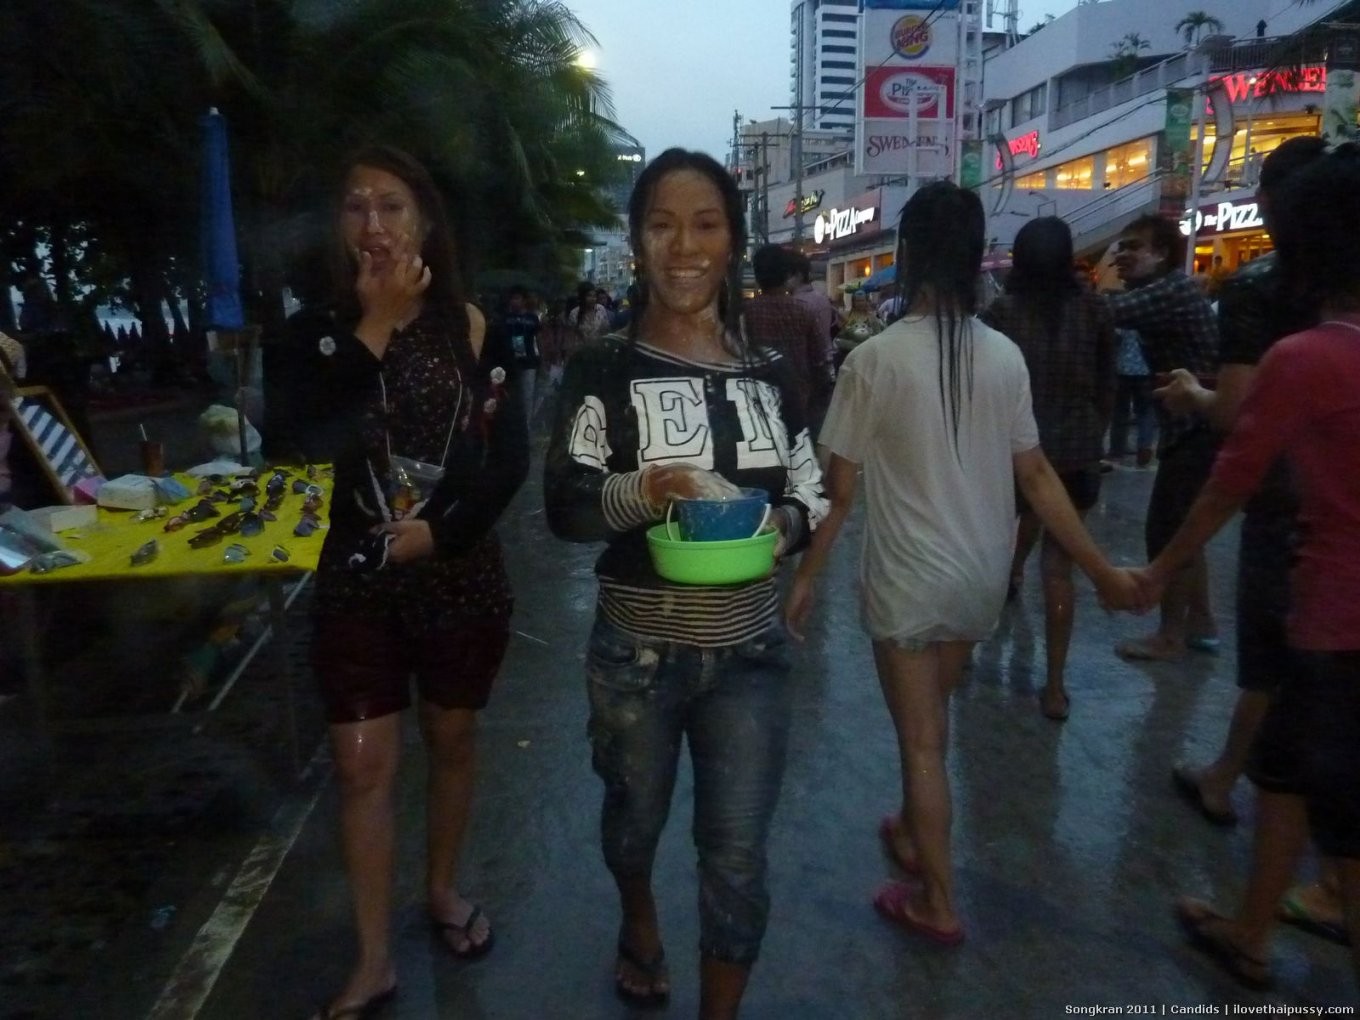 Des prostituées de rue excitées sucent et baisent un touriste pour de l'argent salopes asiatiques chaudes
 #67886383